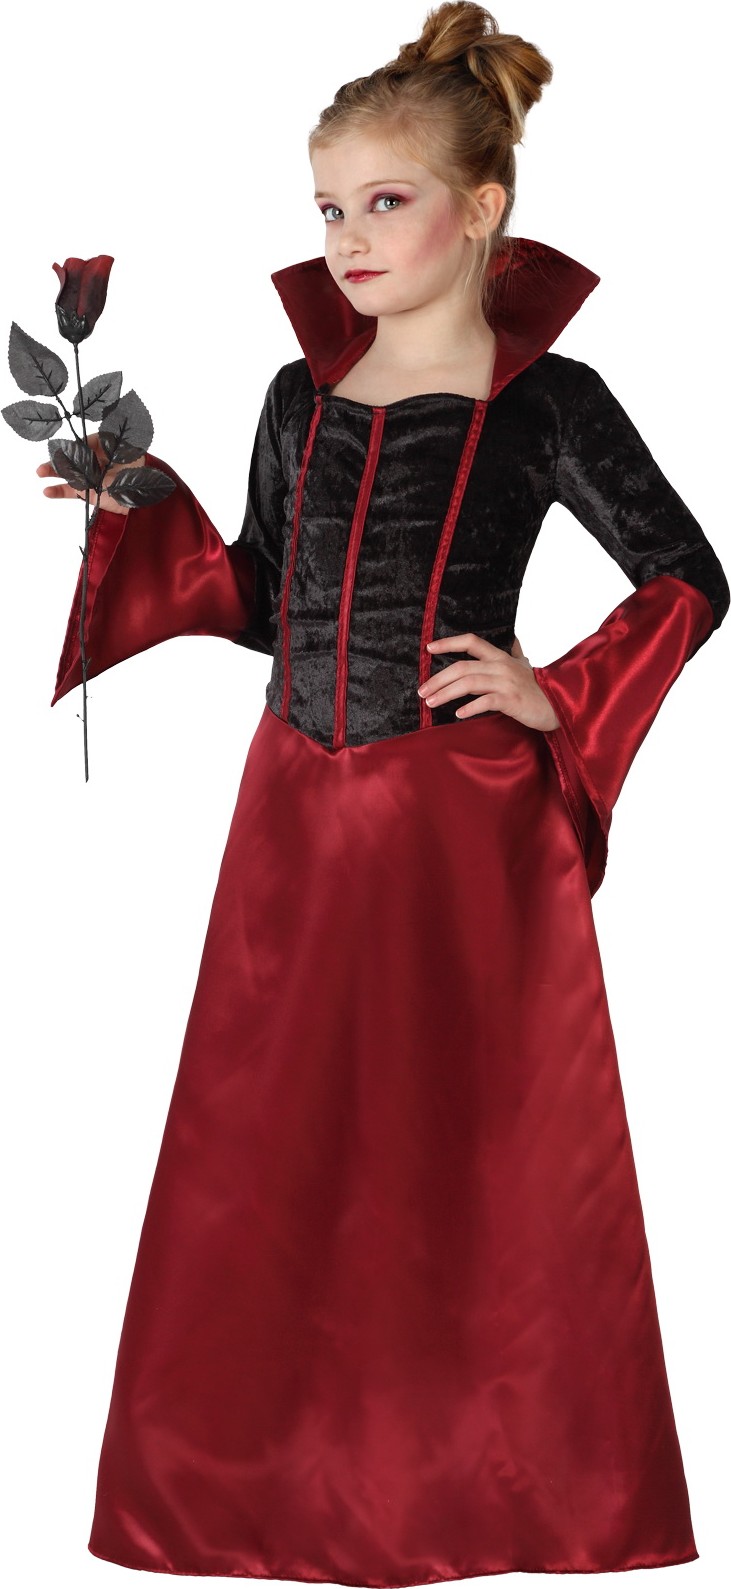 Déguisement comtesse rouge et noire fille Halloween, Taille 8 à 10 ans